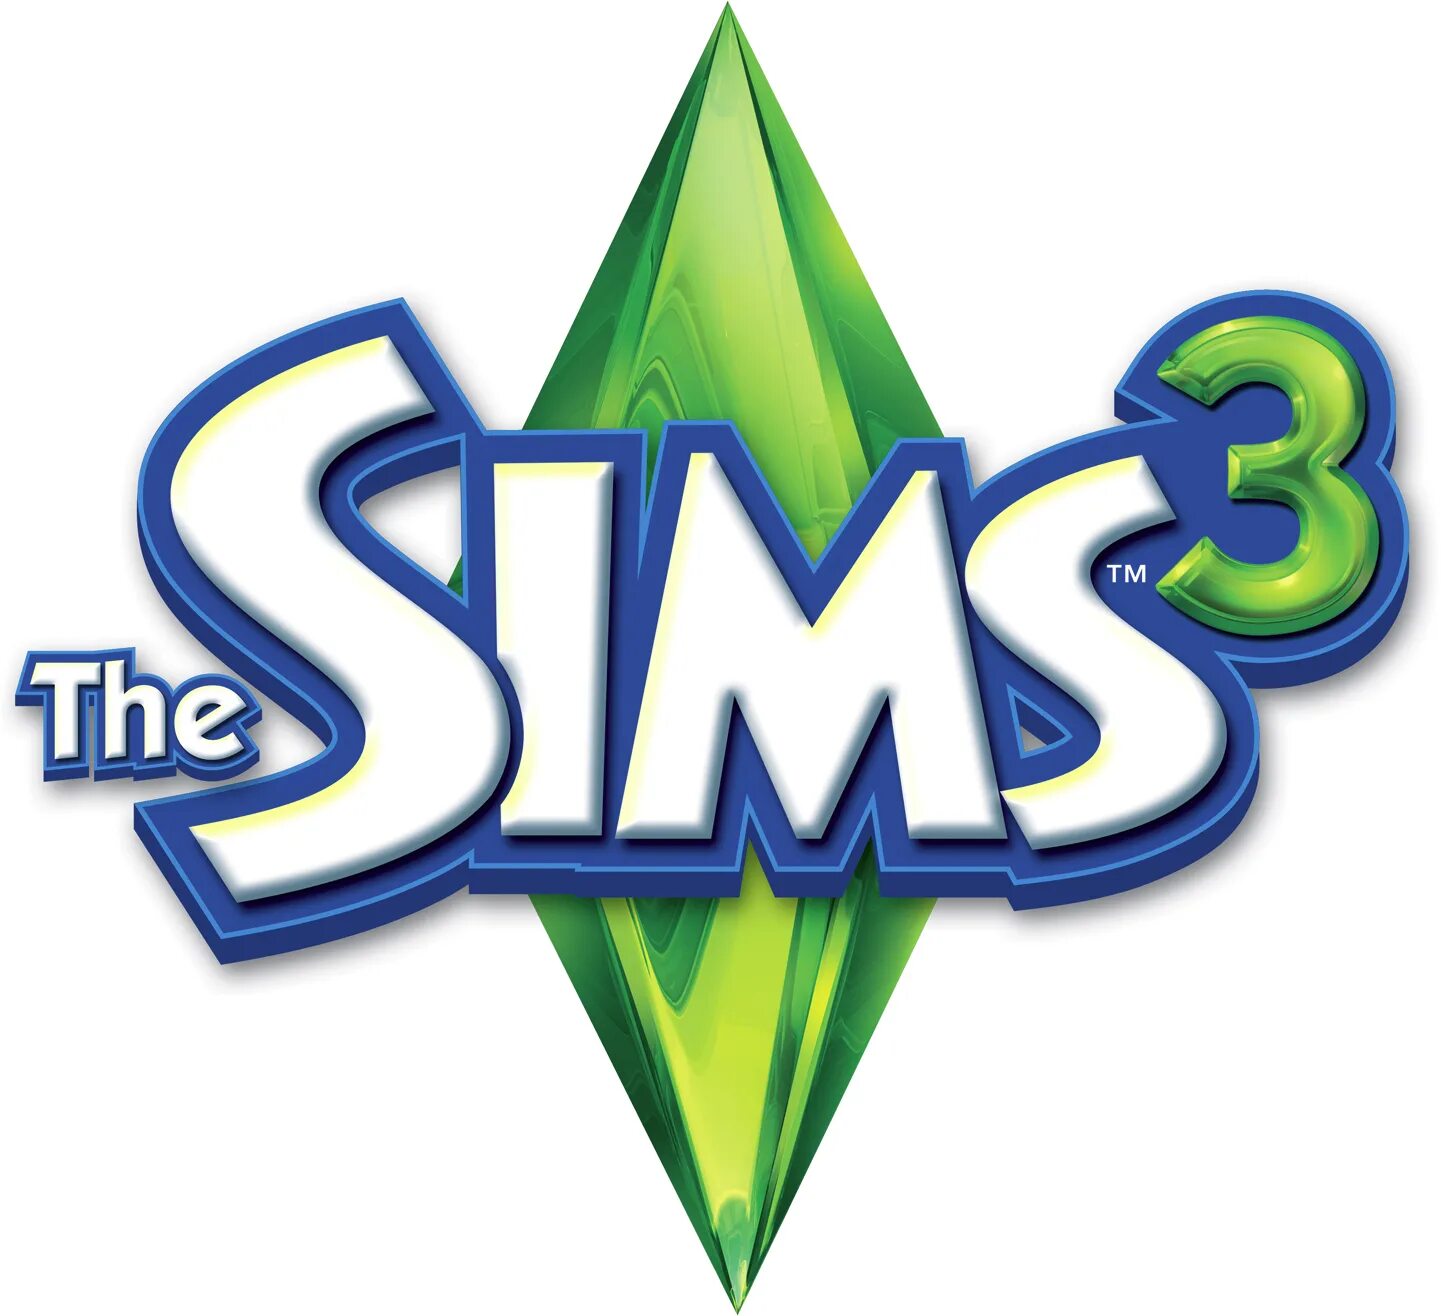 Купить симс стим. The SIMS 3. The SIMS 3 логотип. Симс картинки. Игра симс картинки.